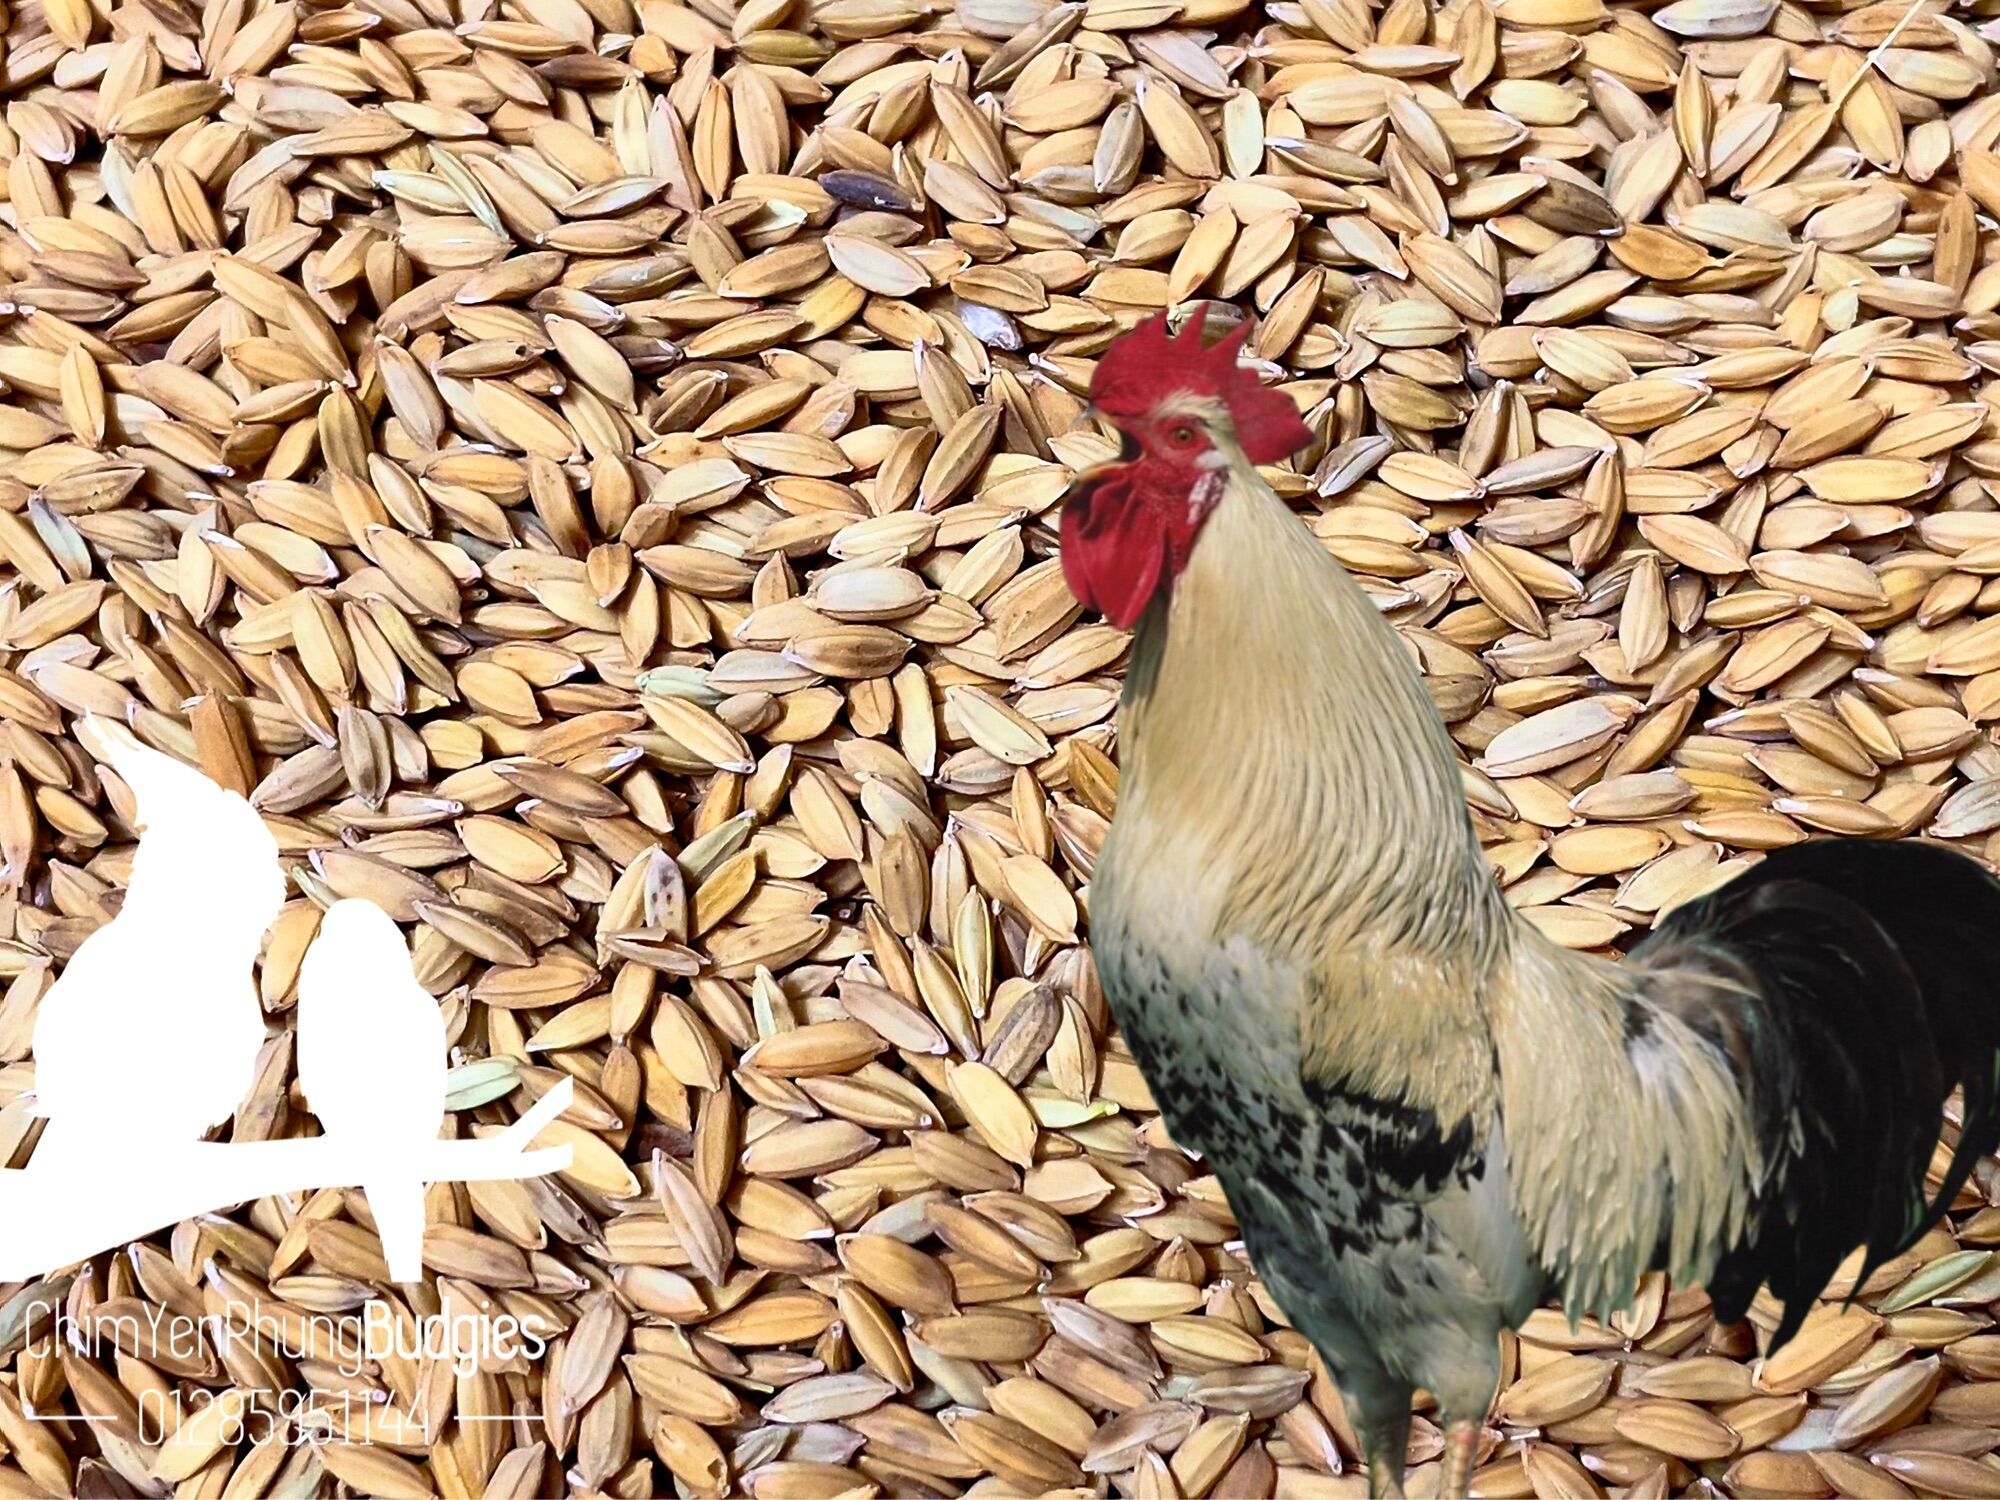 1kg hạt lúa (thóc) cho chim kiểng, gà kiểng hoặc ươm nảy mầm.